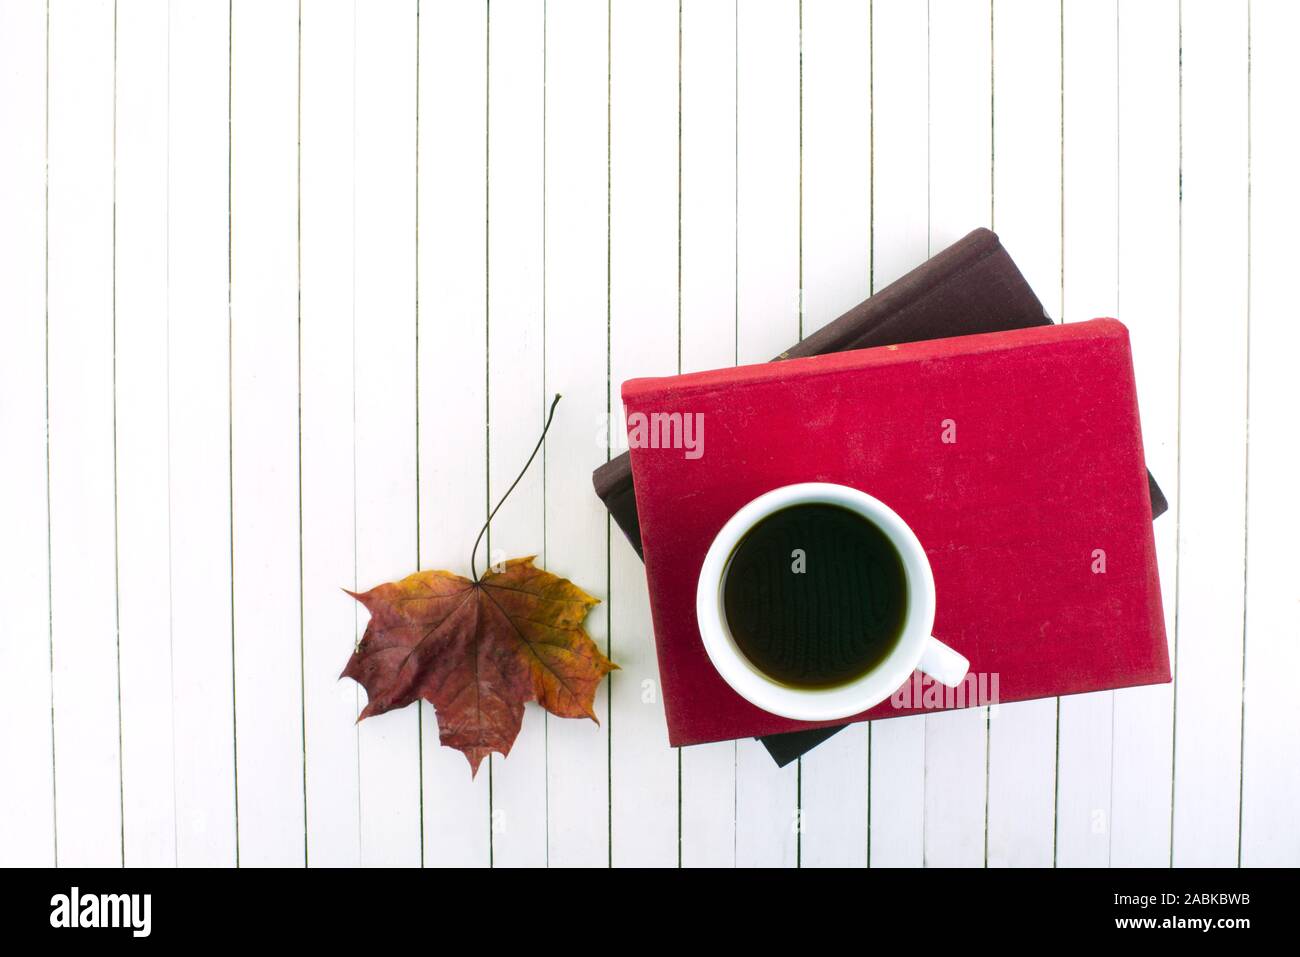 Livre rouge et blanc tasse de café sur le vintage white background.froid et de l'humeur d'automne Banque D'Images